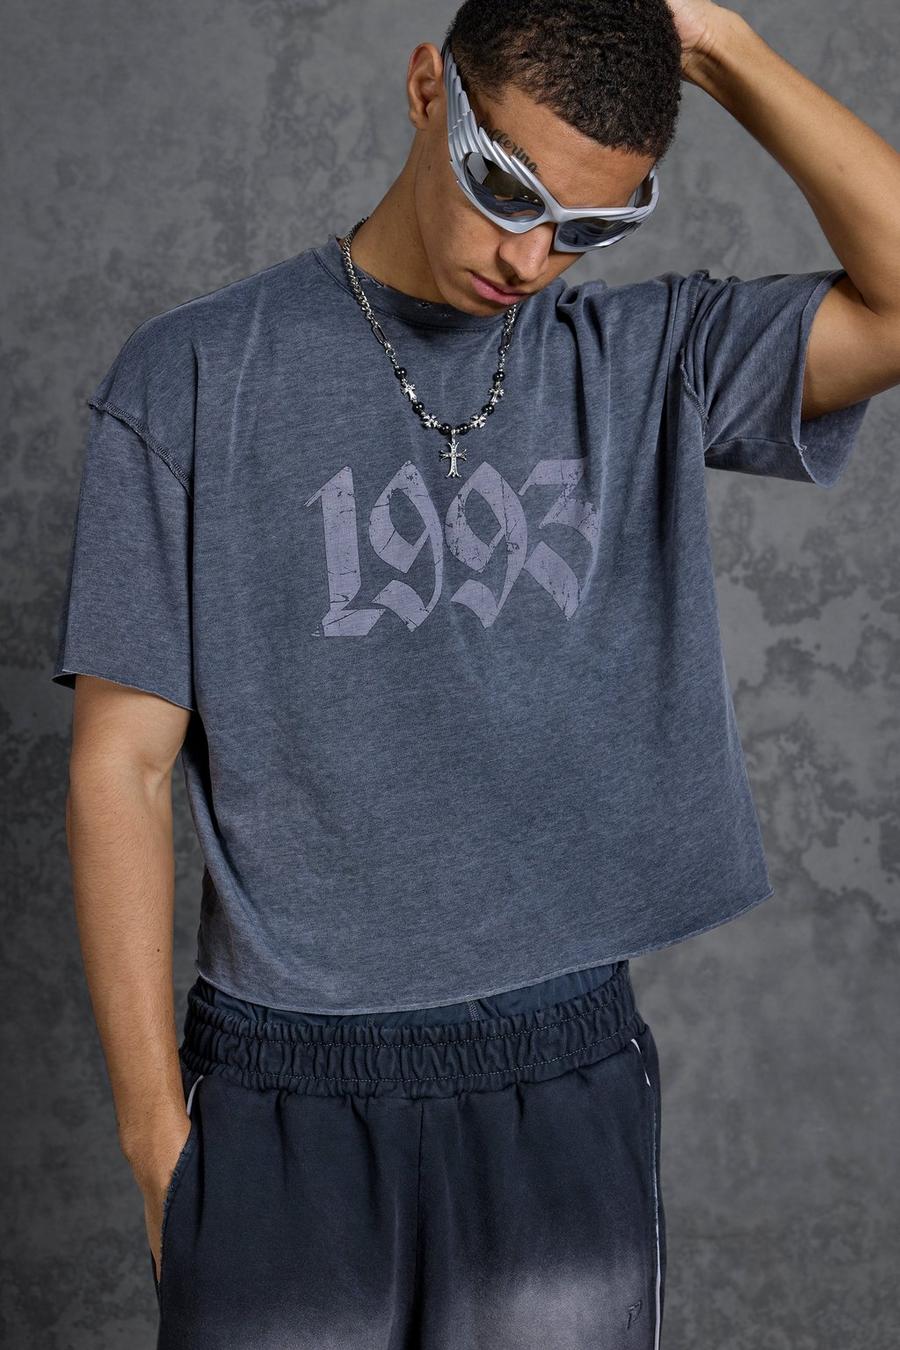 Gunna - T-shirt oversize court imprimé 1993, Charcoal